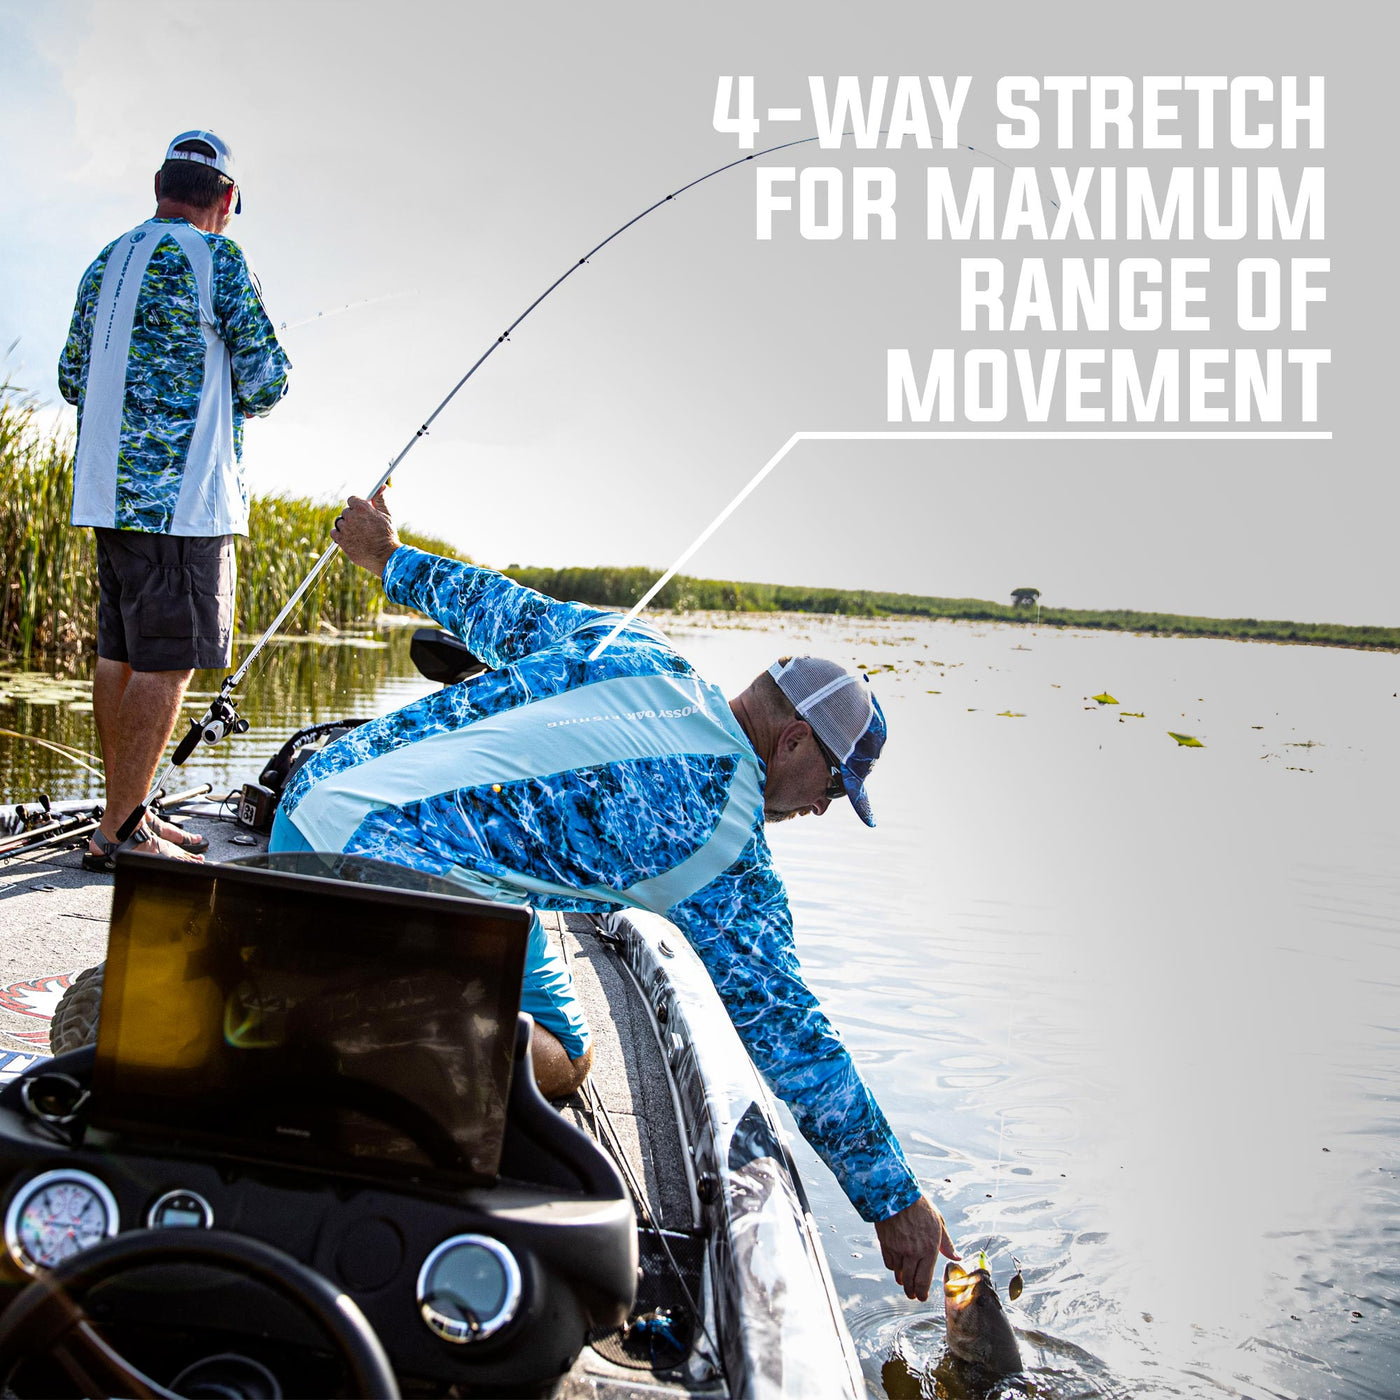 Mossy Oak Men's Long Sleeve Fishing Tech Shirt 4-Way Stretch for Maximum Range of Movement